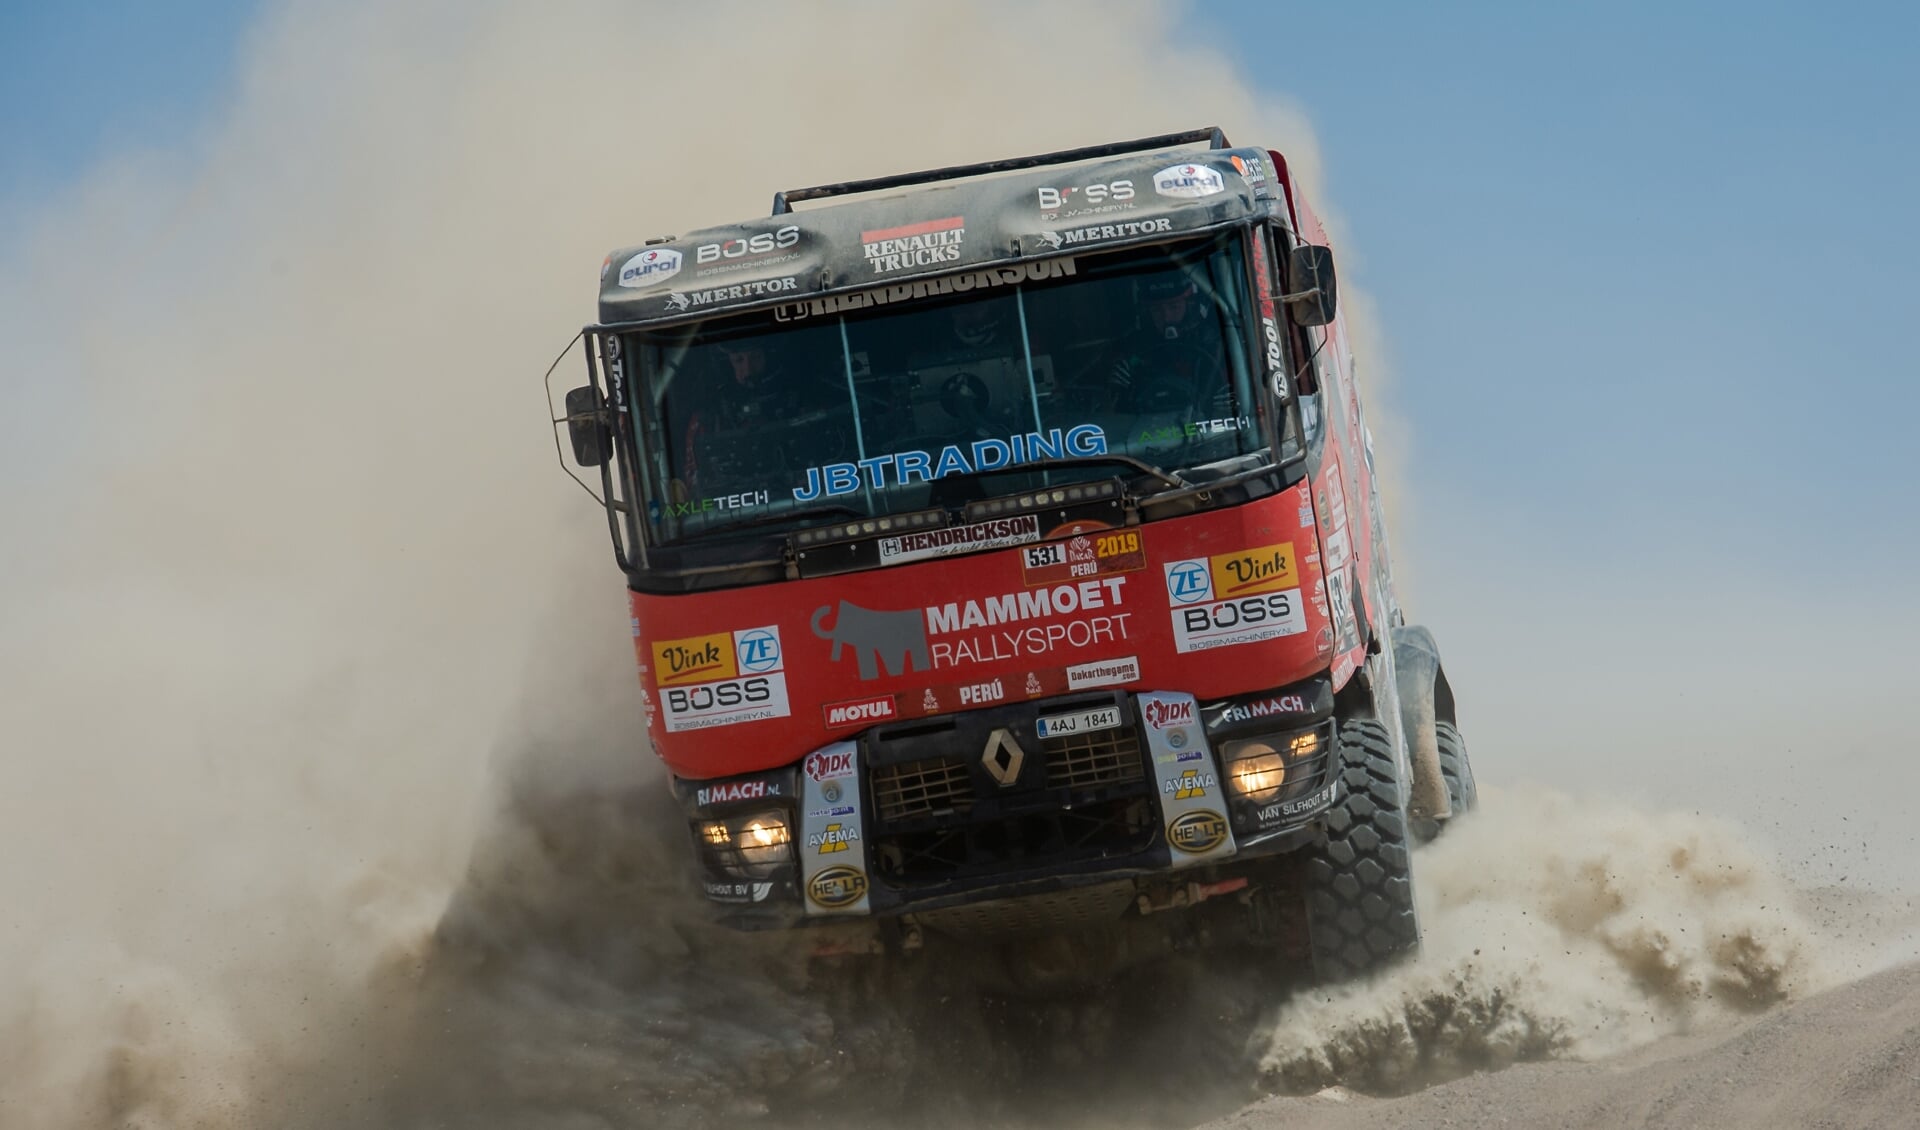 Het team van Mammoet Rallysport kiest voor zekerheid om Janus van Kasteren naar de finish te brengen. 